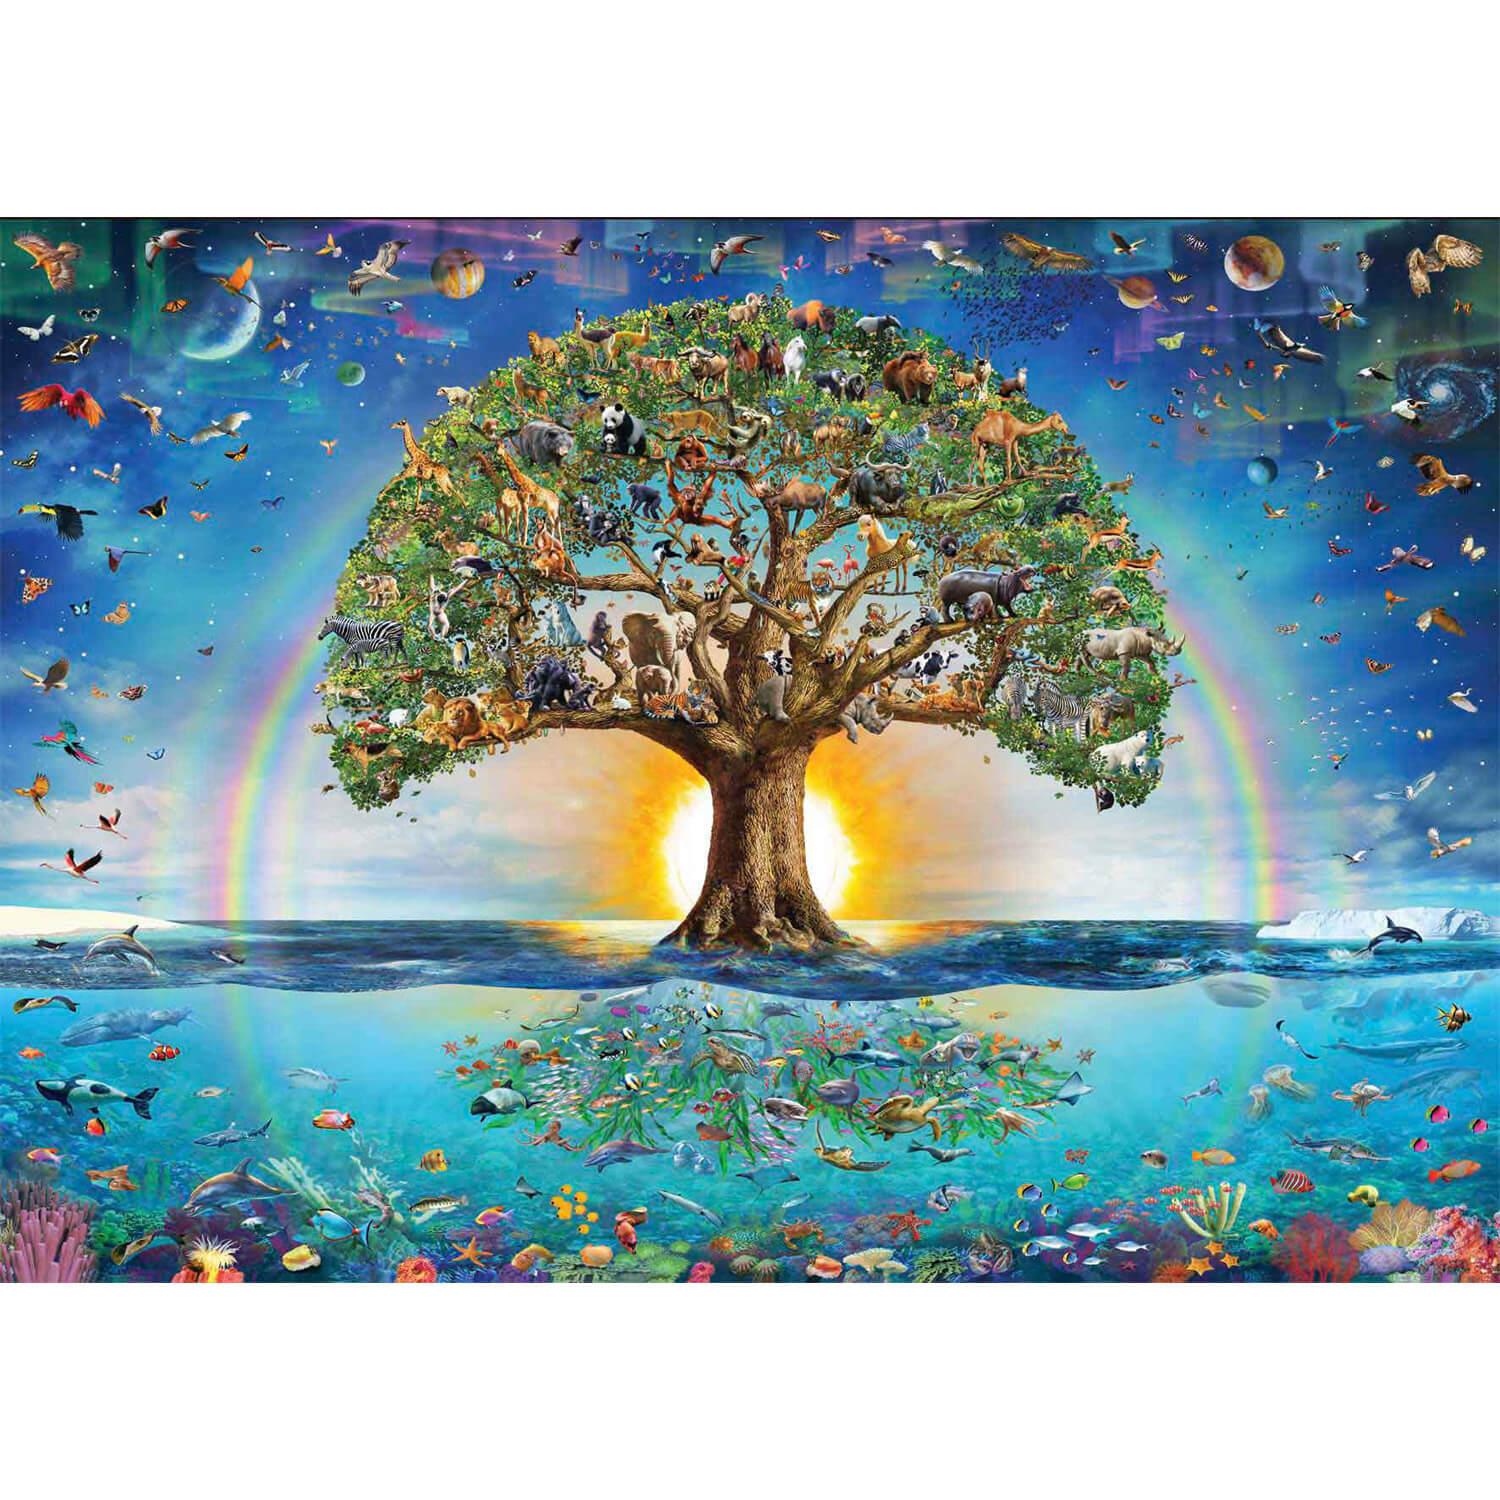 L'arbre de vie - Puzzle